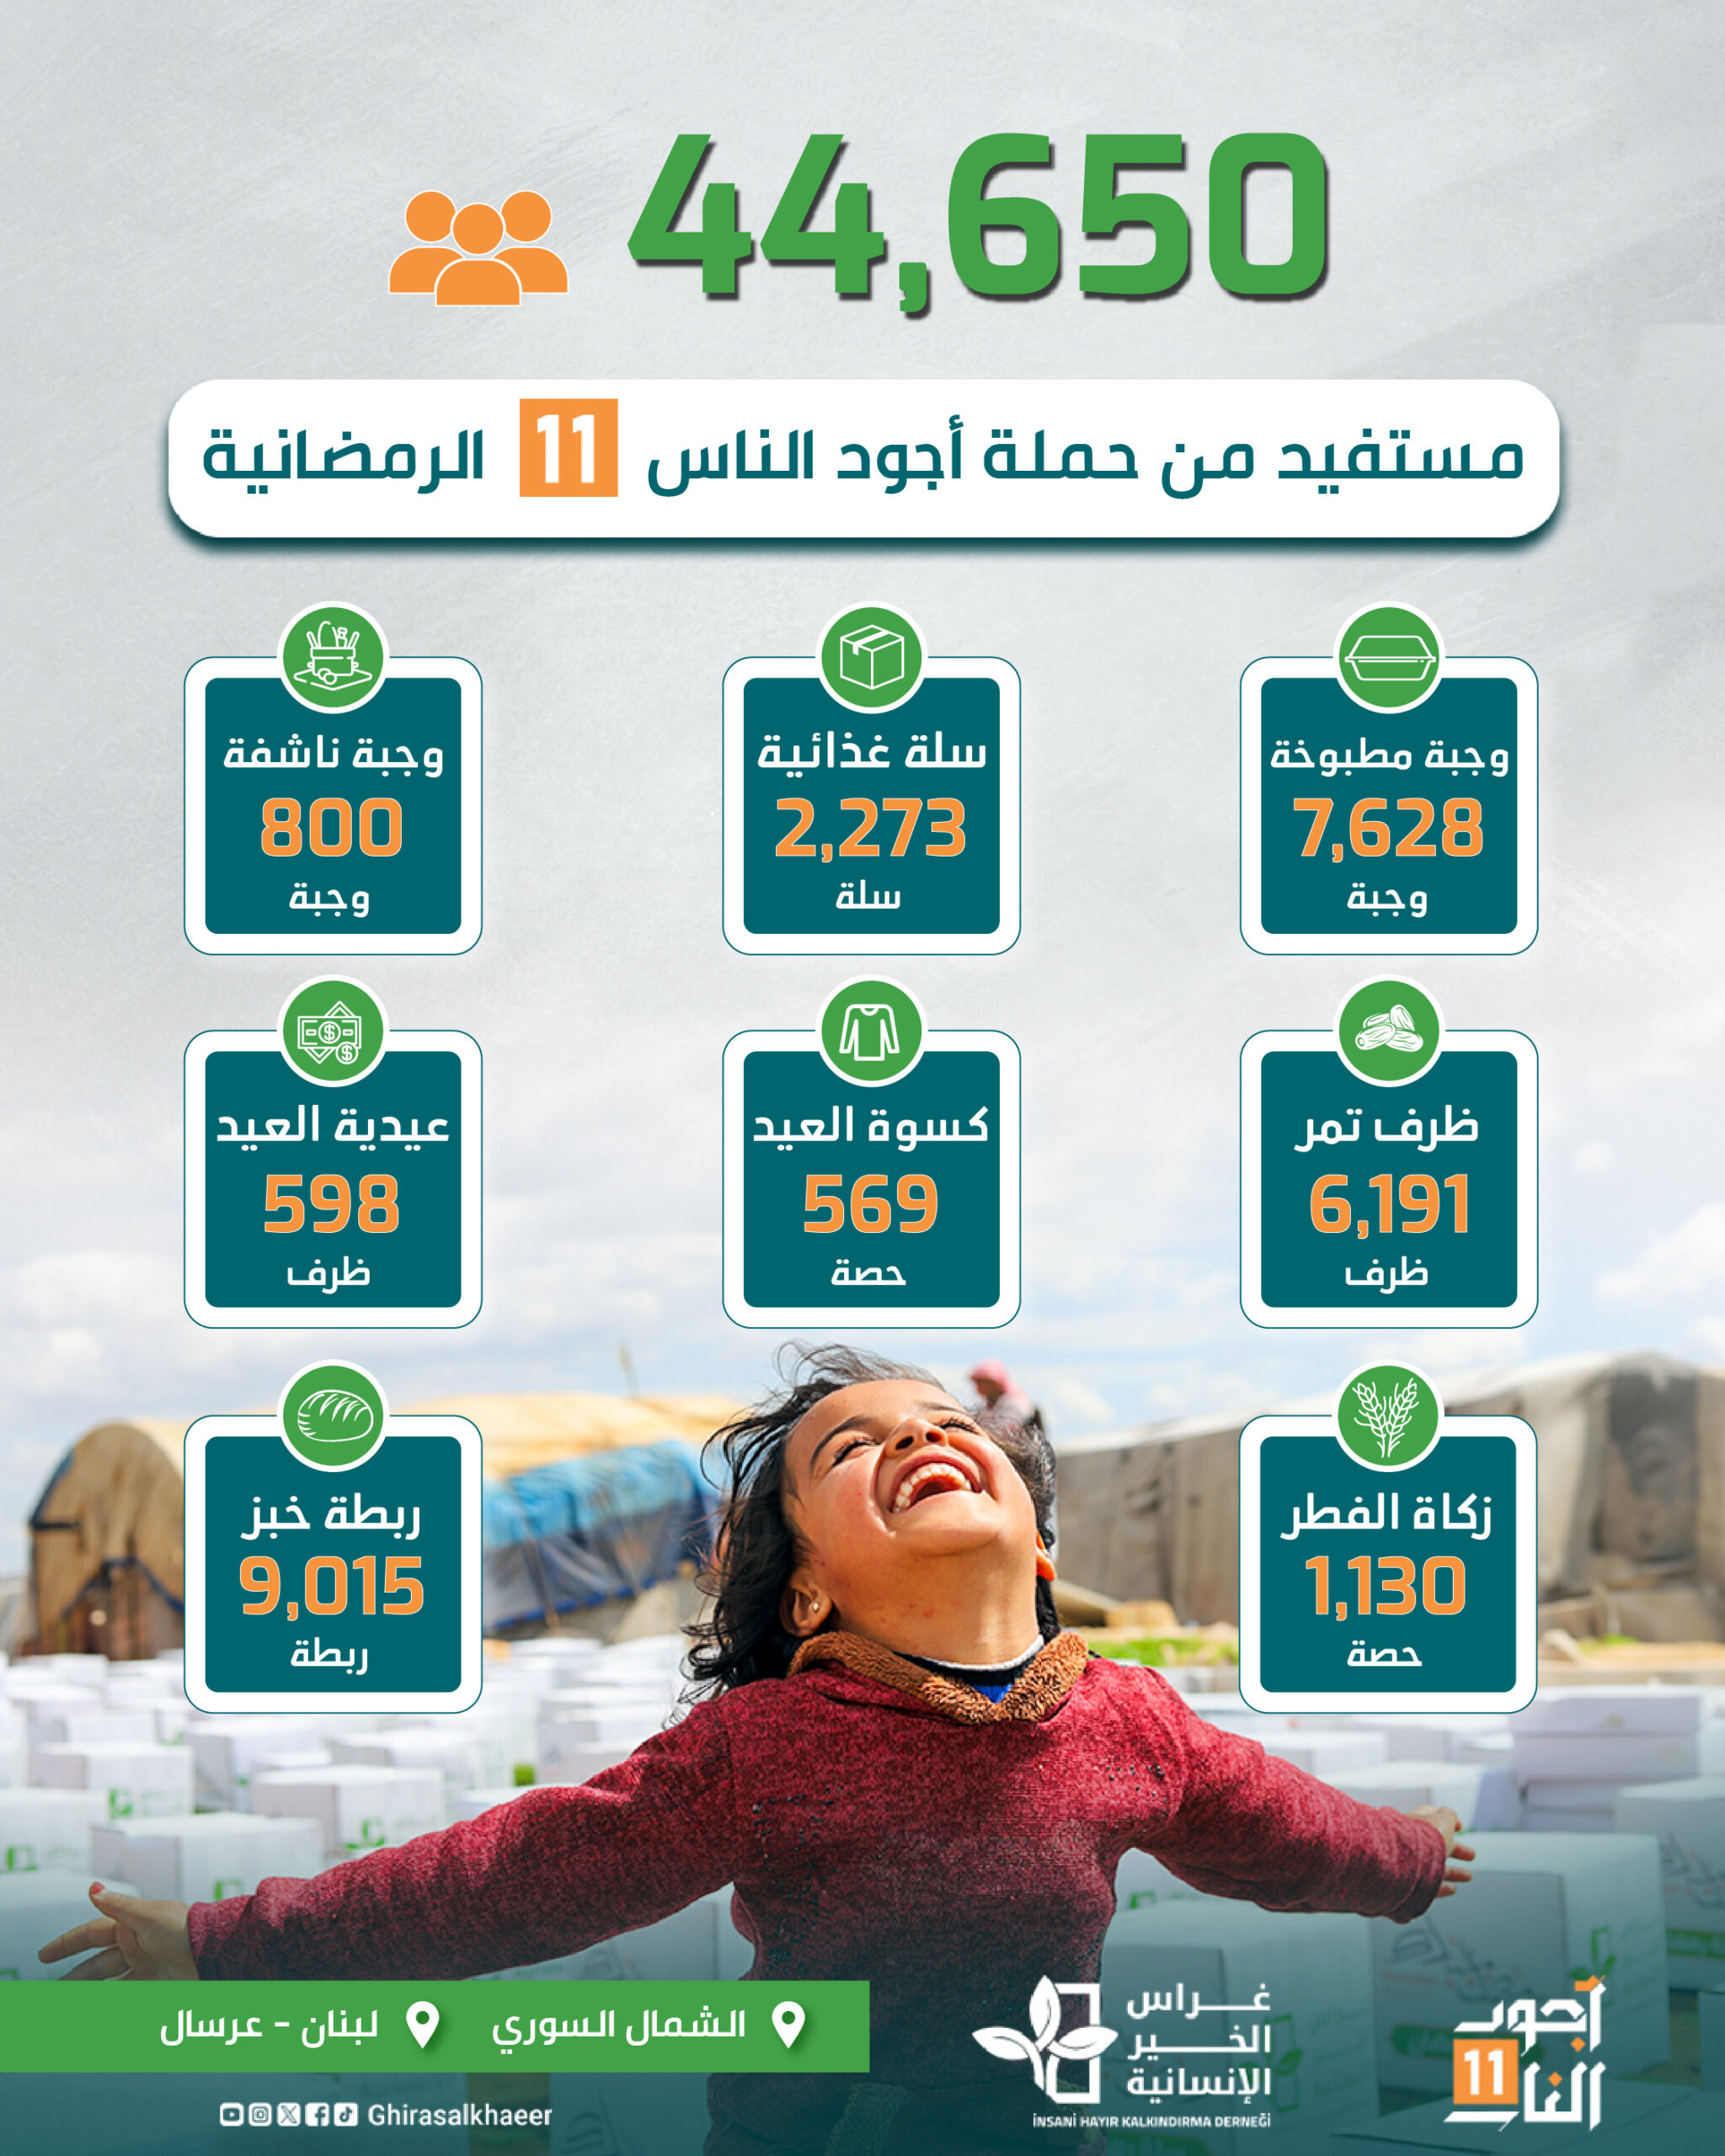 إحصائيات المساعدات التي قدمتها جمعية غراس الخير الإنسانية في شهر رمضان المبارك 